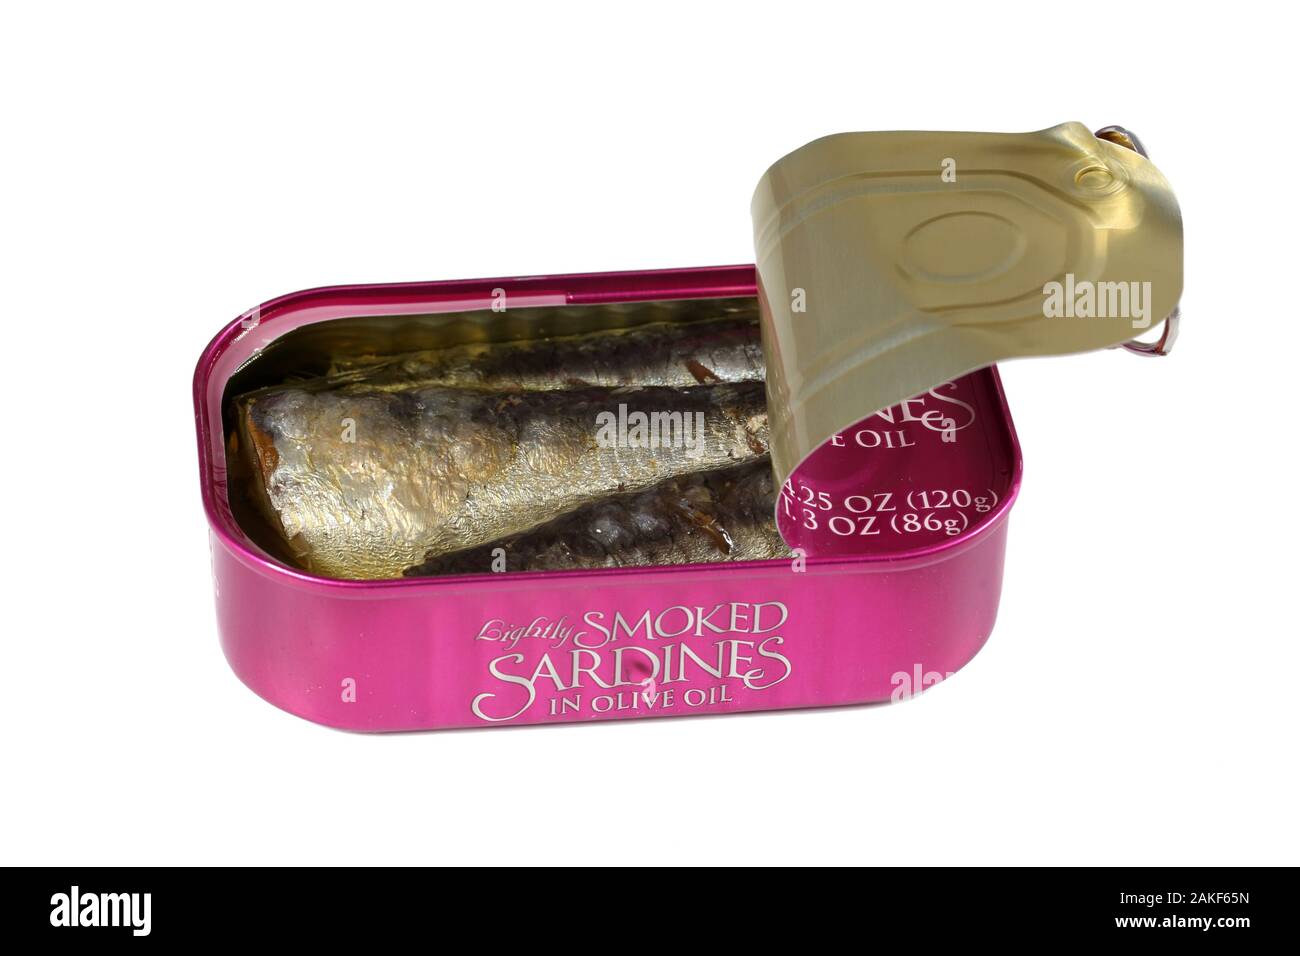 Une CAN ouverte de la marque Trader Joes sardines dans l'huile d'olive isolée sur un fond blanc. Image découpée pour l'illustration et l'usage éditorial. Banque D'Images